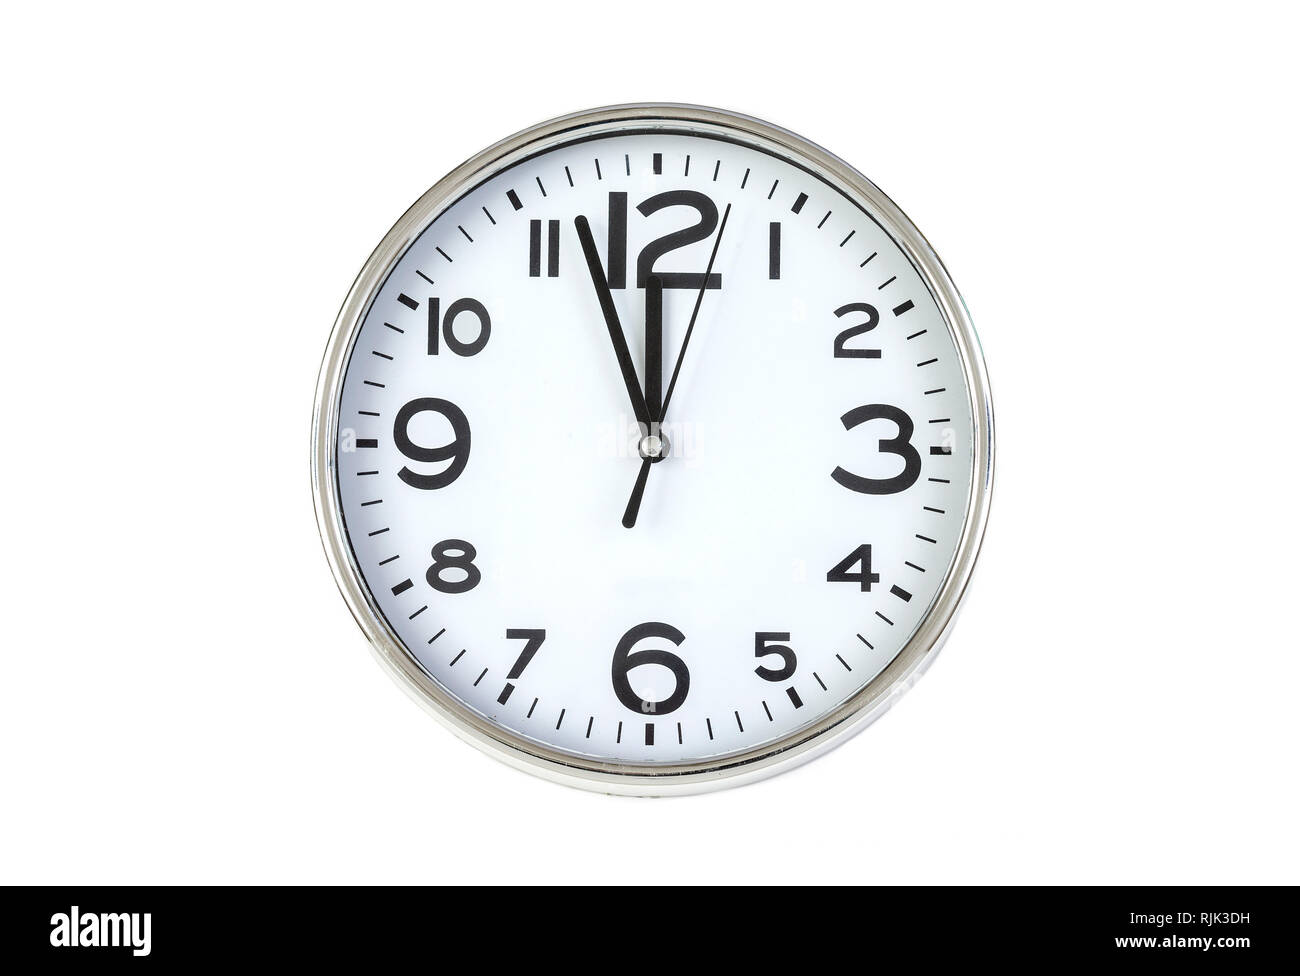 Deuxième minute heure ponctuels de temps. Grande horloge sur fond blanc mur. Le concept de temps. Banque D'Images